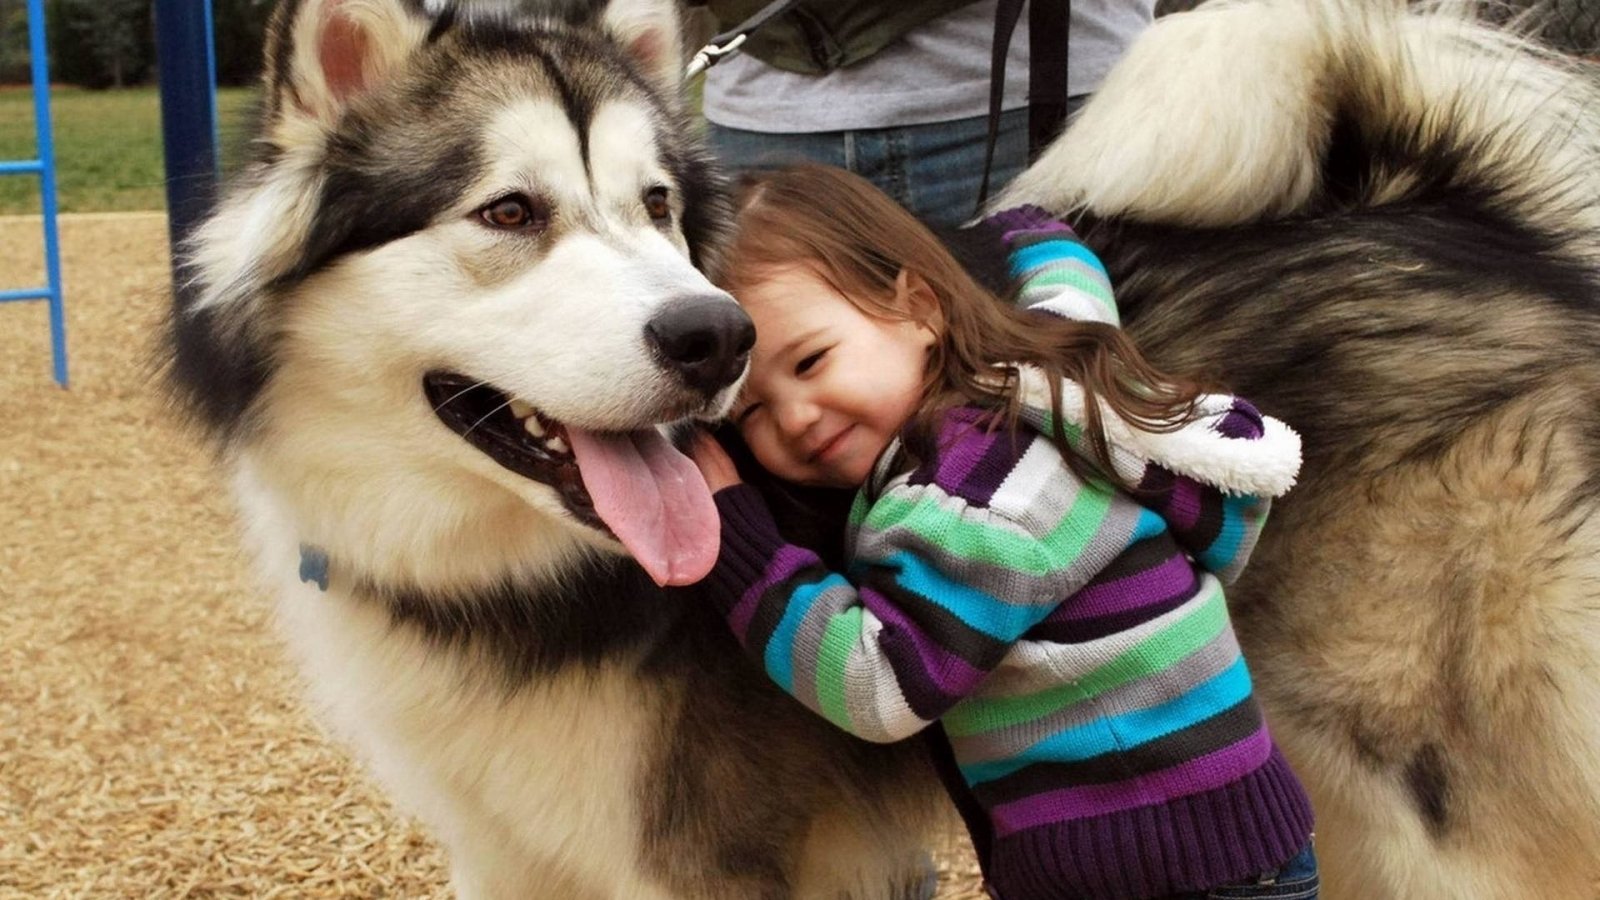 Egy szeretetteljes ölelés - csak akkor engedjük meg a gyereknek, ha jól ismerjük a kutyát!